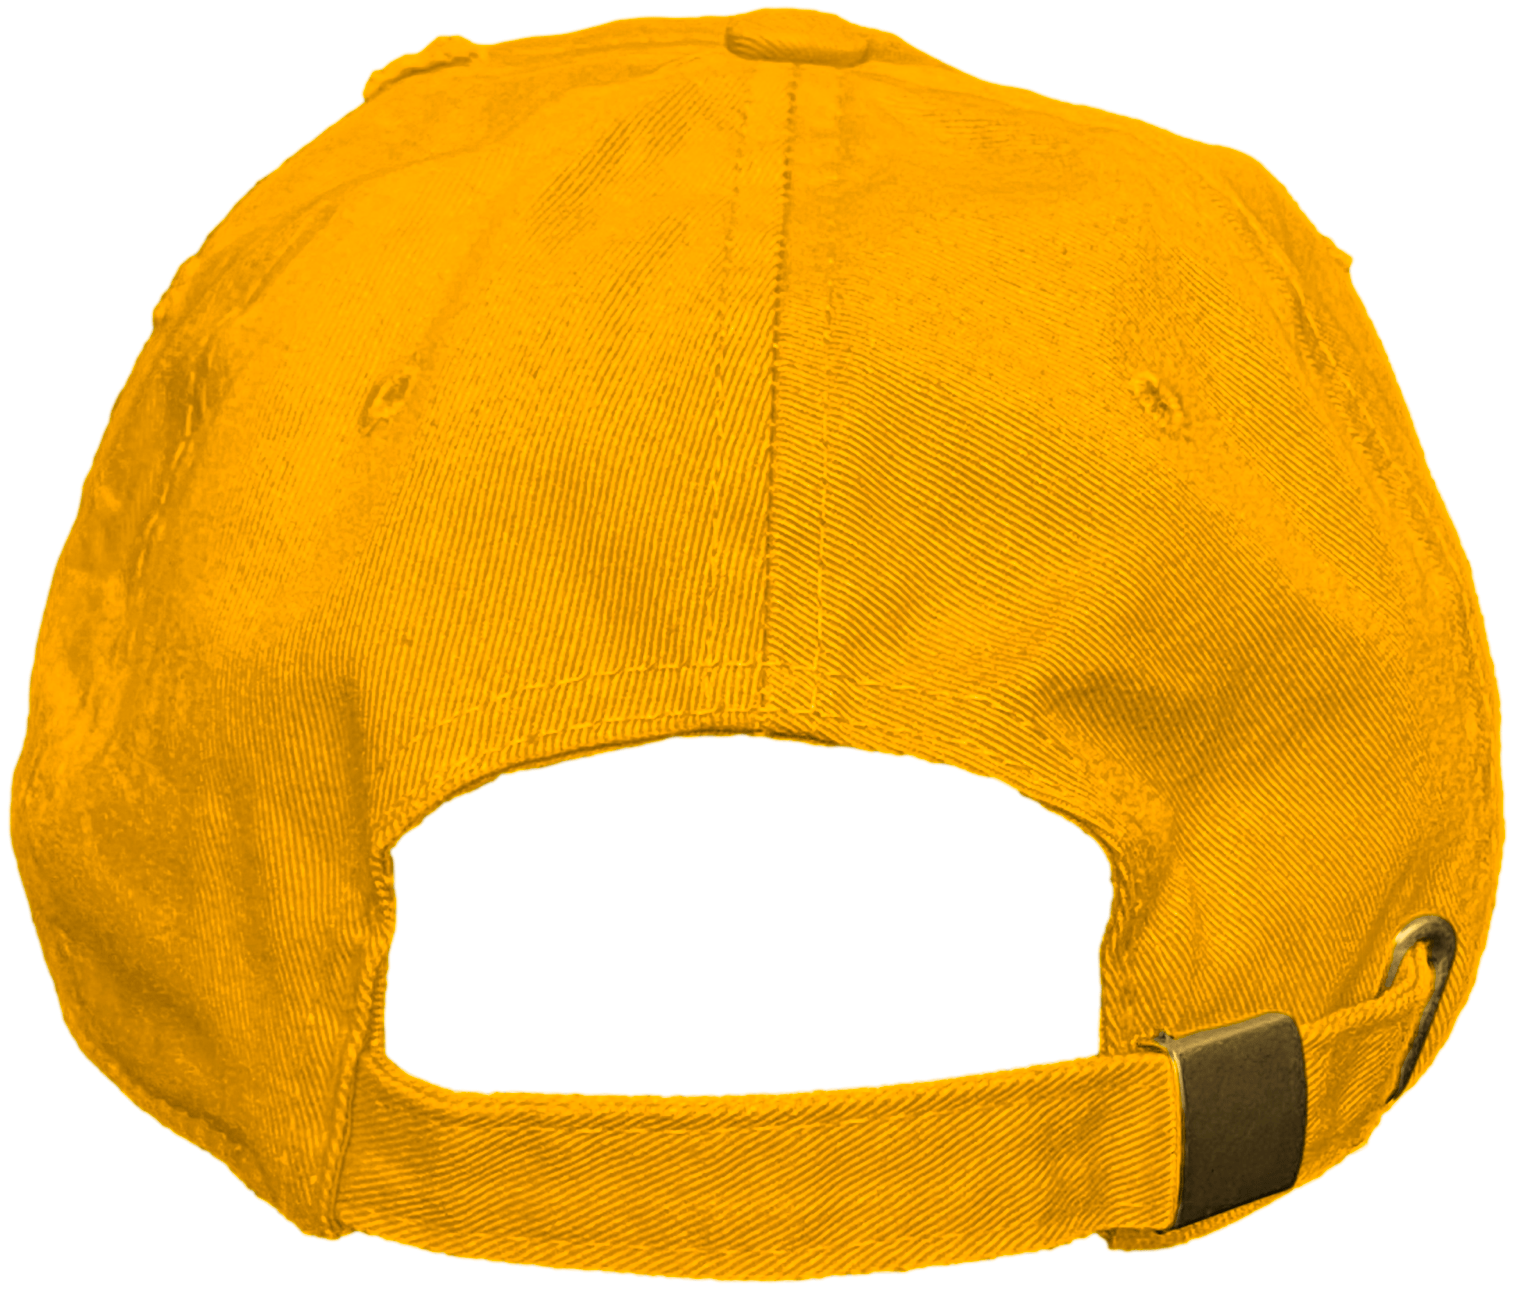 Yellow Ochre 6s Dad Hat - Jordan 6 Ochre 6s Hats - Red Money Talks